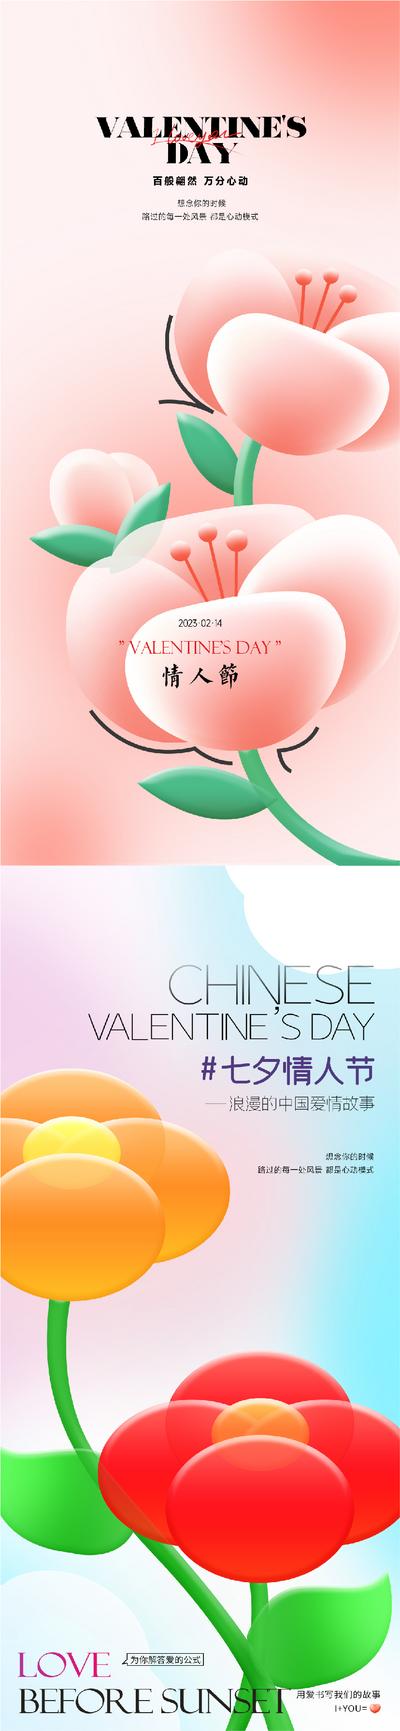 南门网 海报 地产 公历节日 情人节 玫瑰花 浪漫 大气